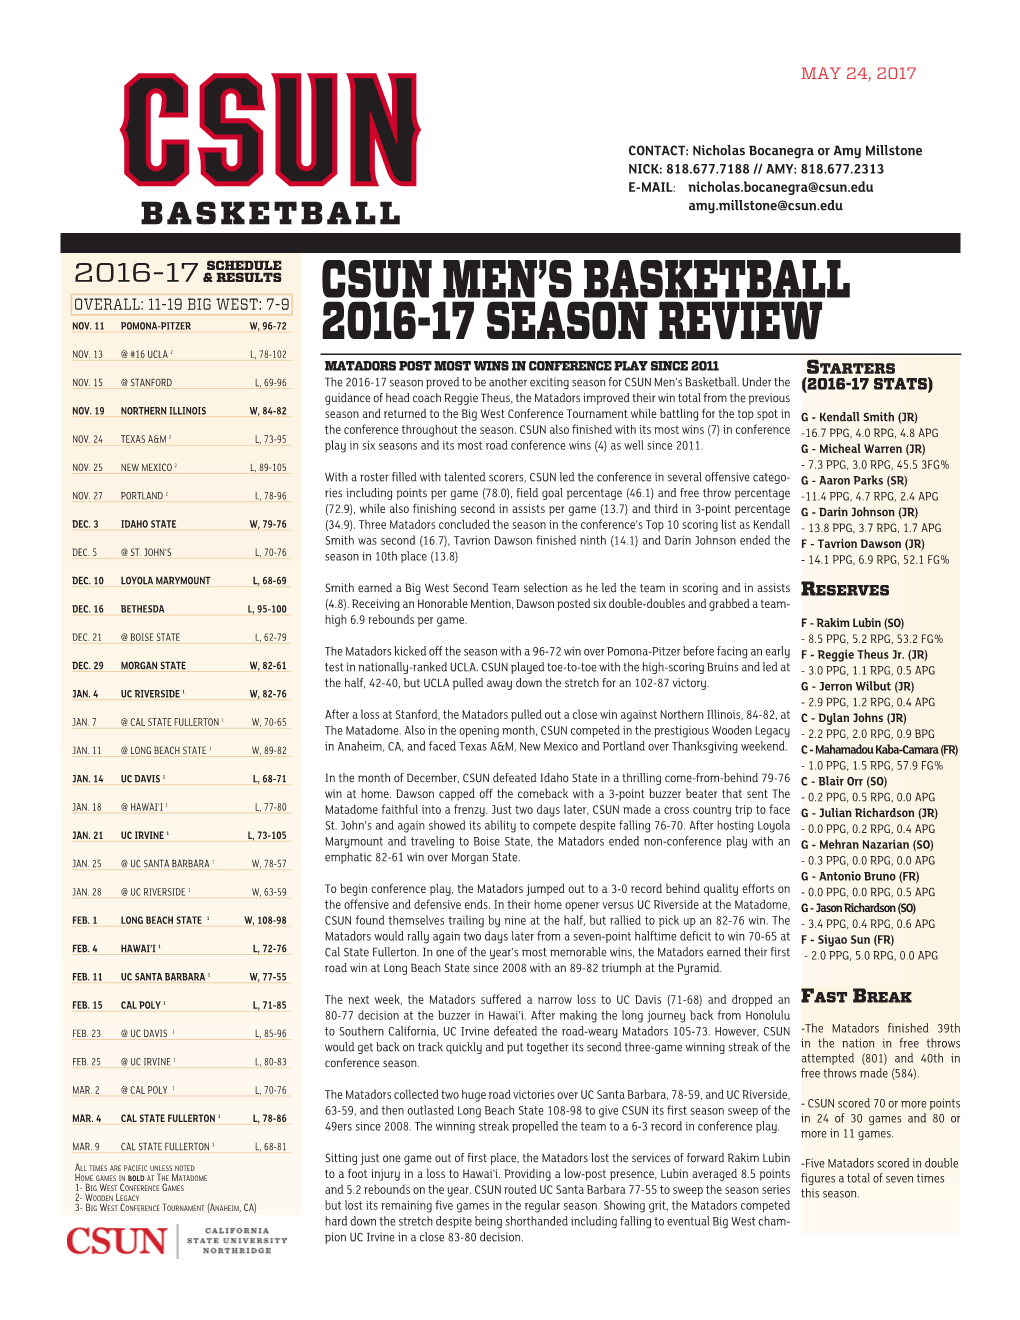 Csun Men's Basketball 2016-17 Season Review